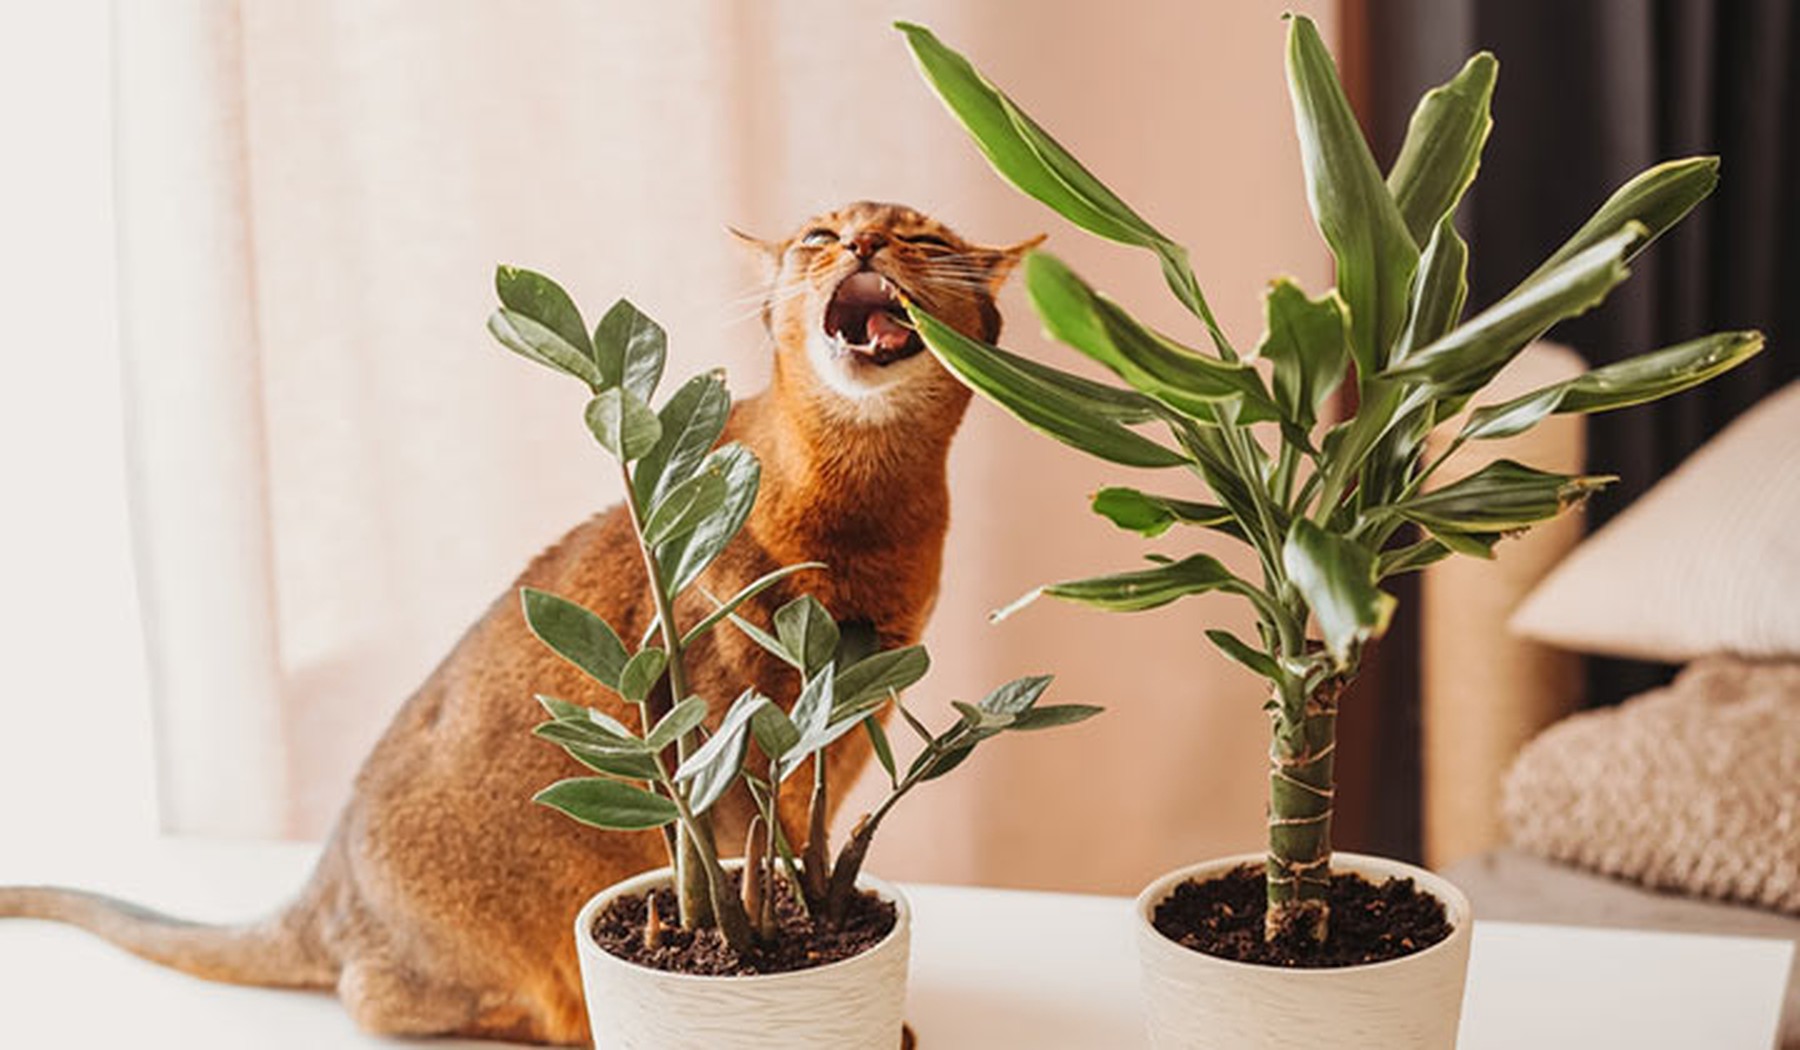 gato naranja mordiendo una especie de palmera y con otra planta al lado